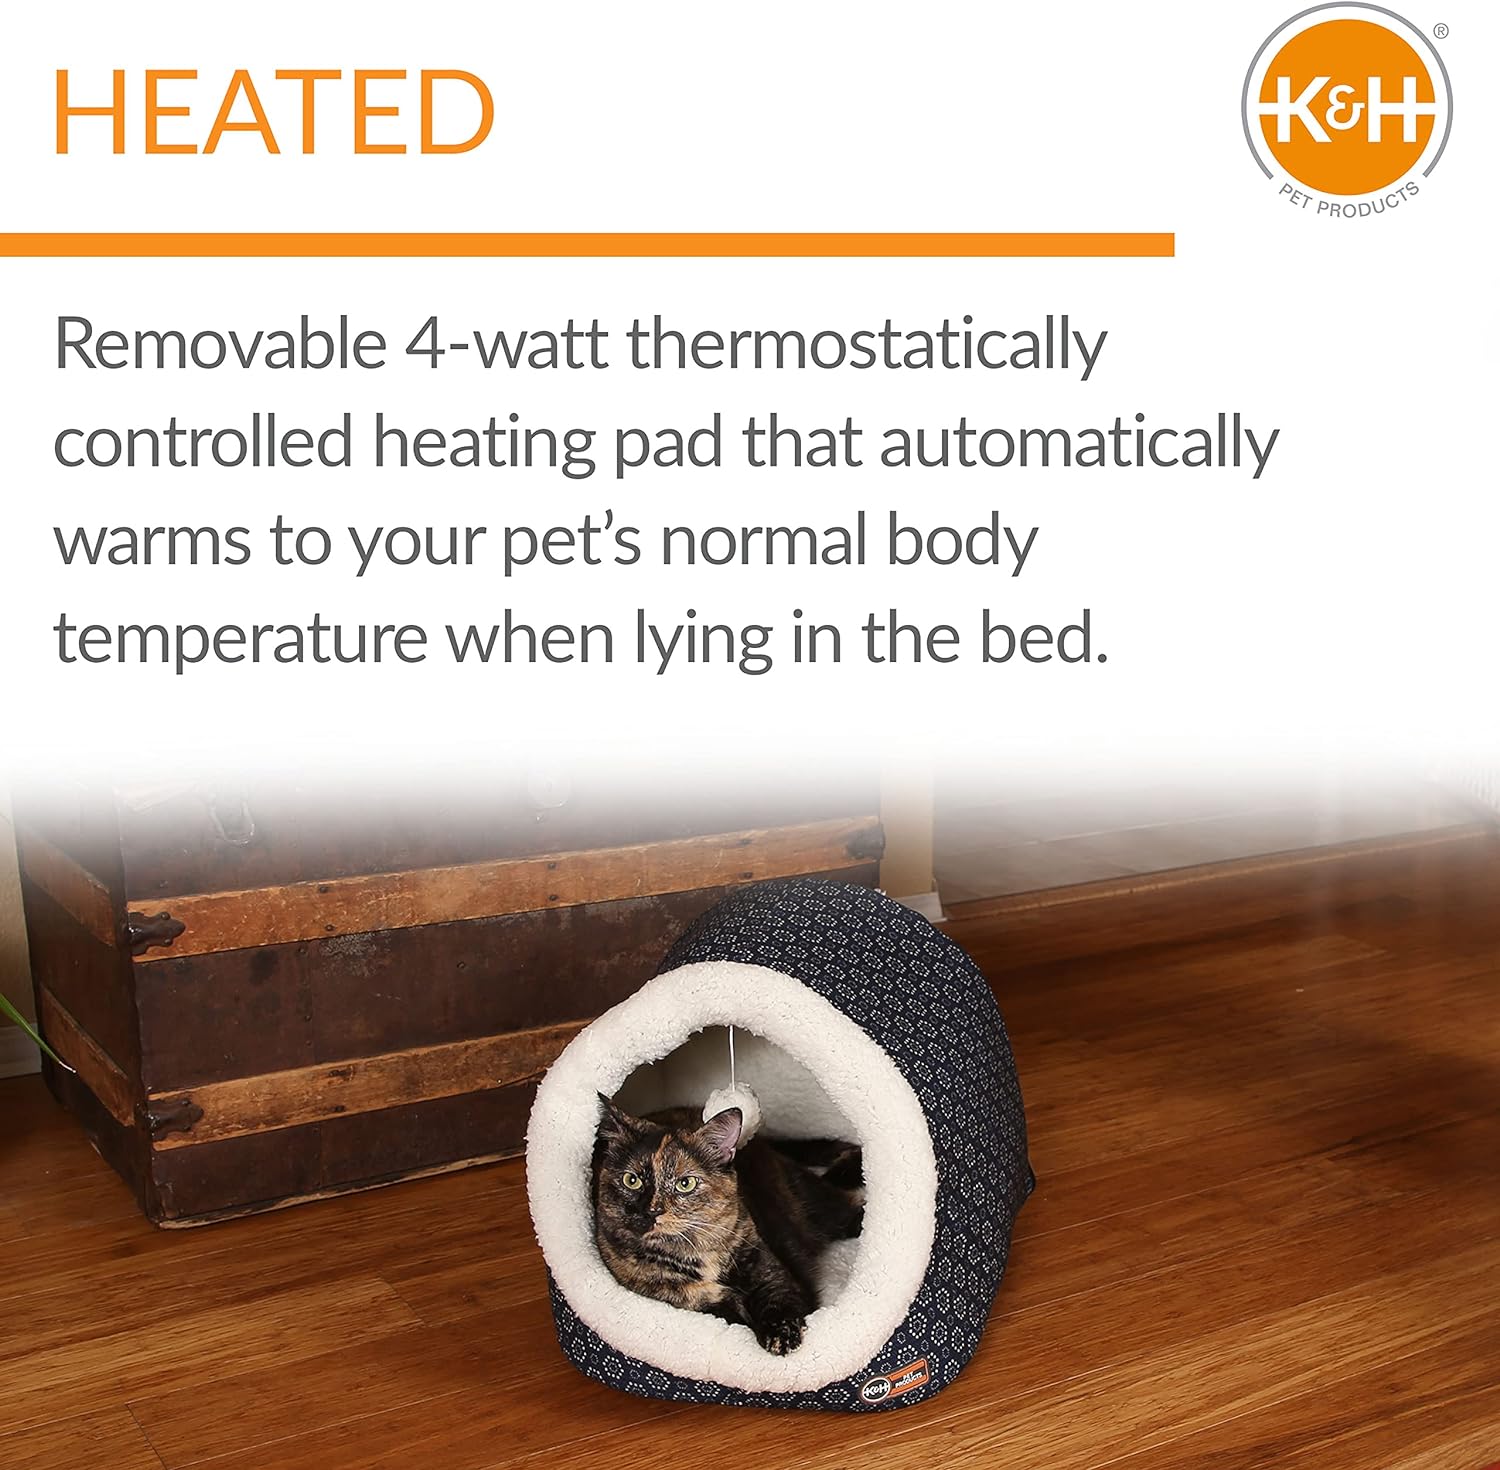 K&H Products Thermo-Pet Cave Cama para gatos con calefacción, color azul